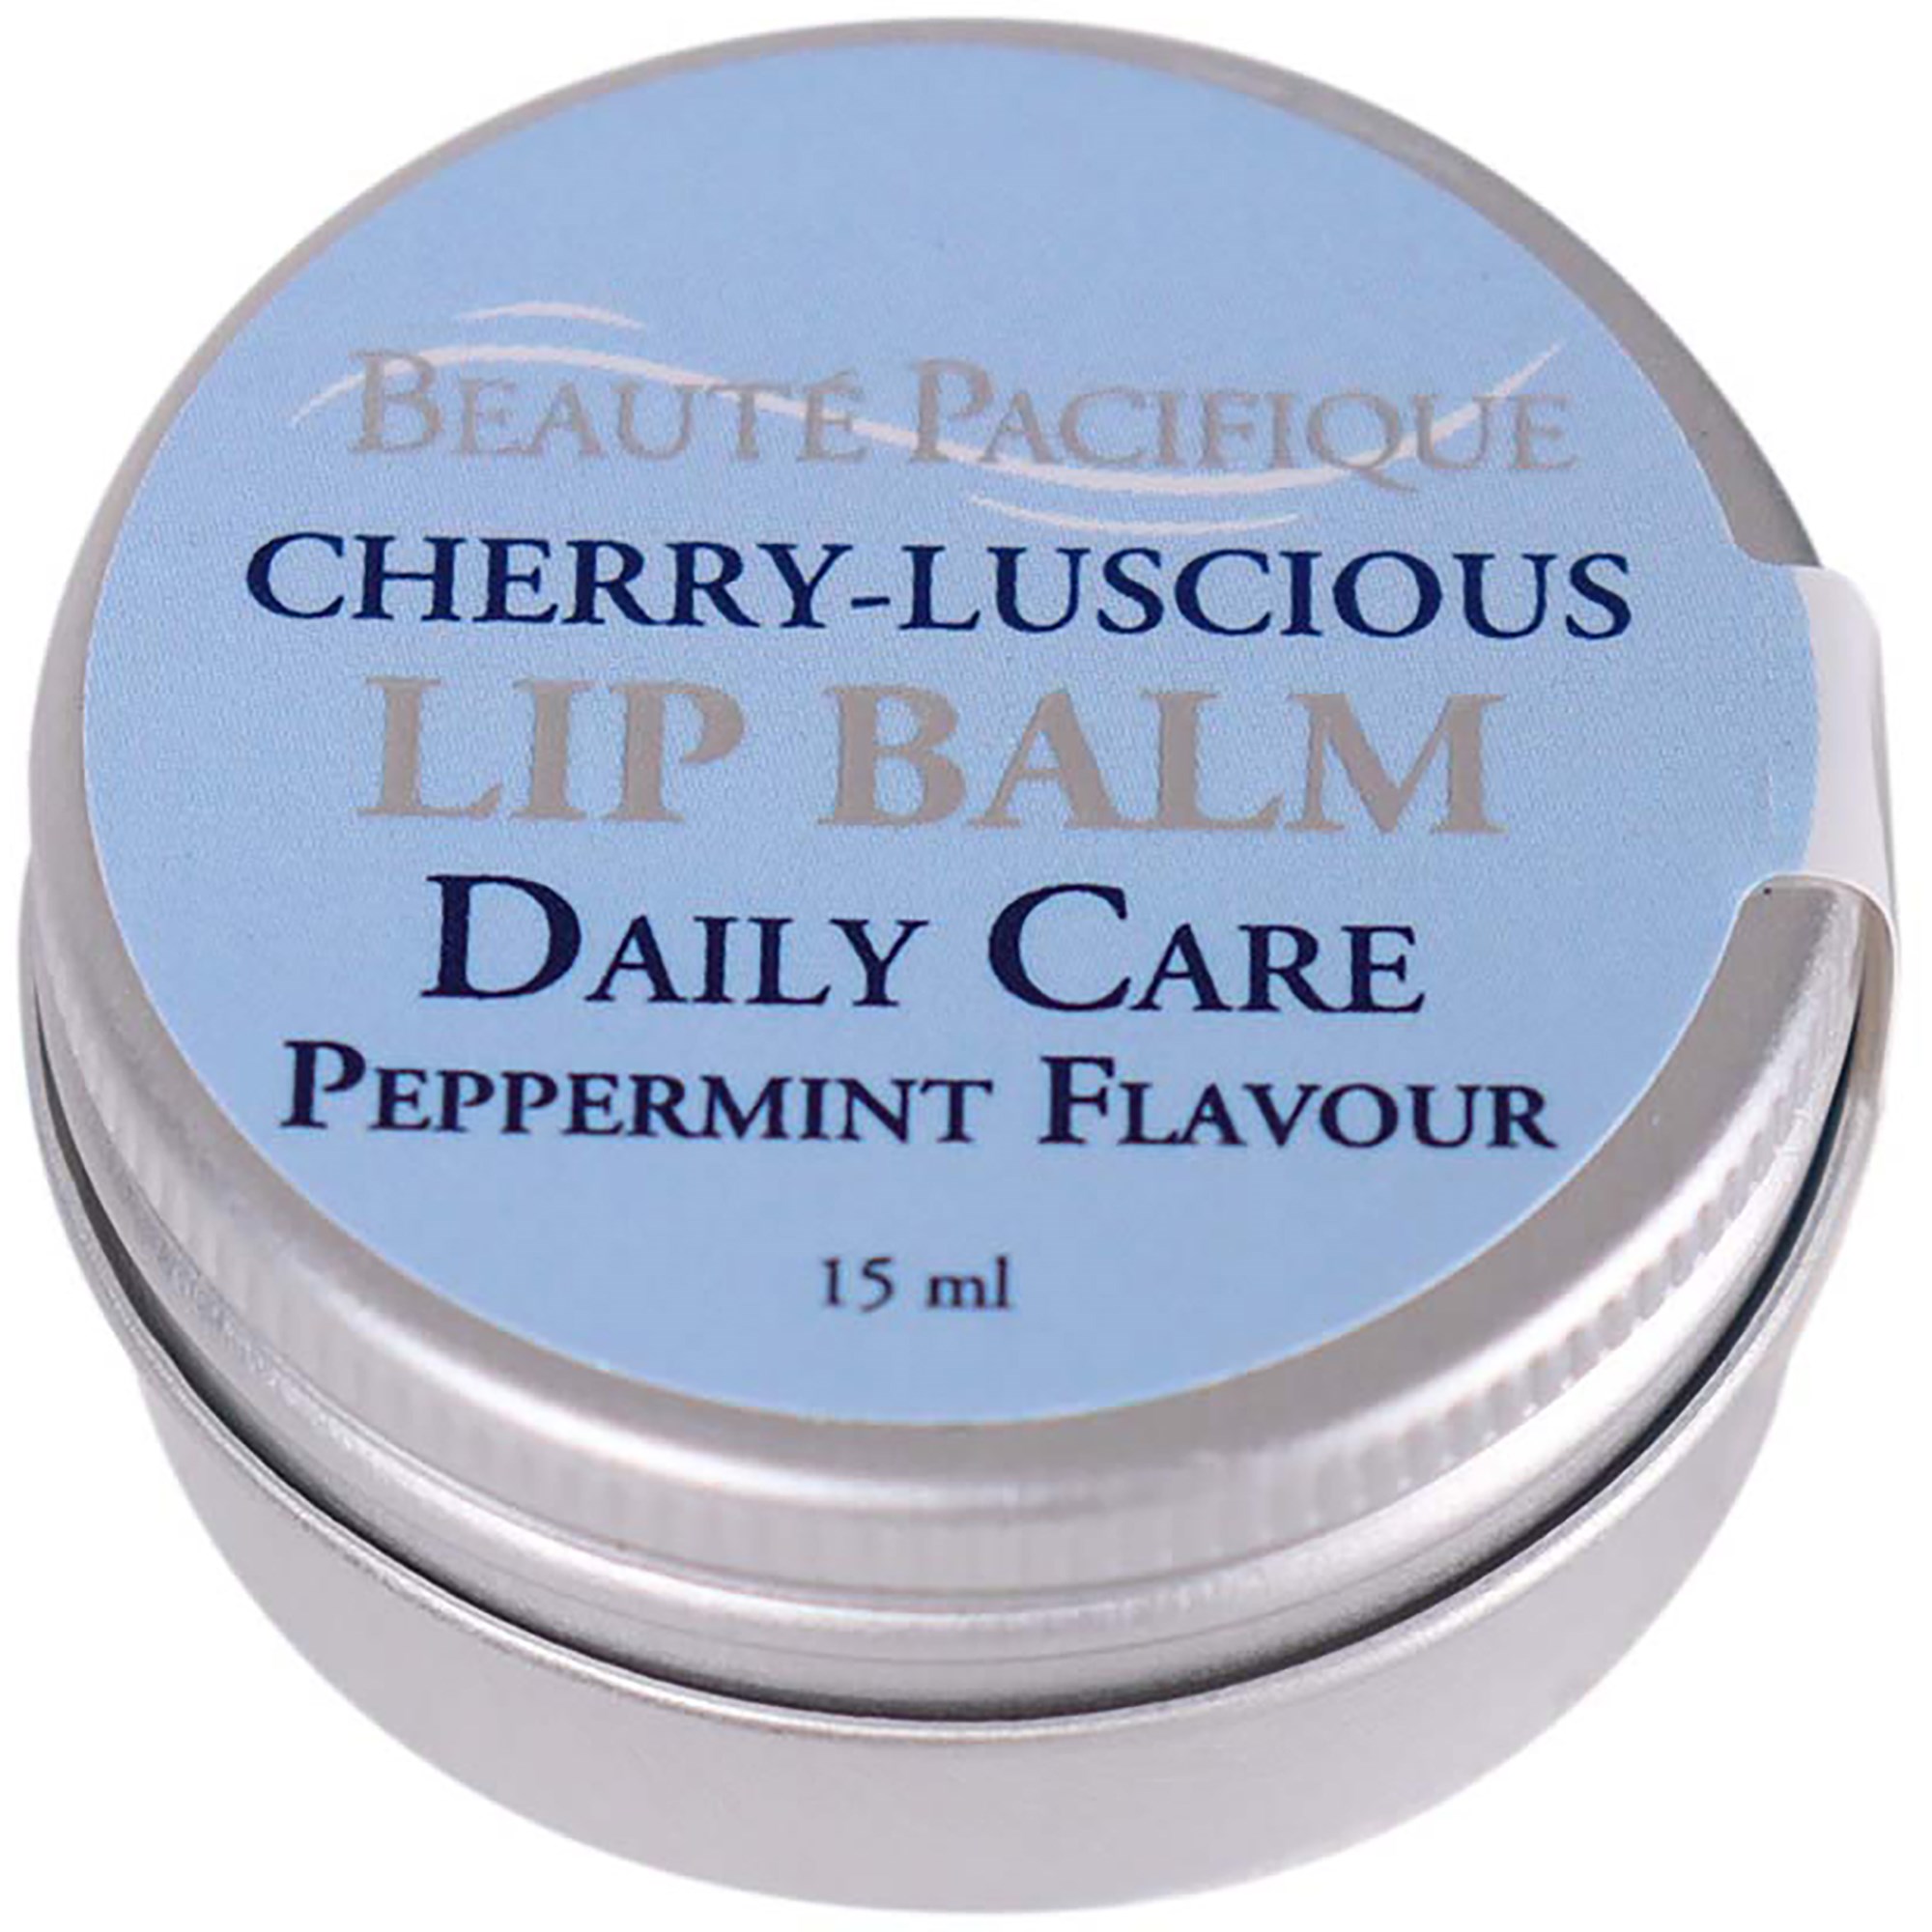 Bilde av Beauté Pacifique Cherry-luscious Lip Balm (peppermint) 15 G